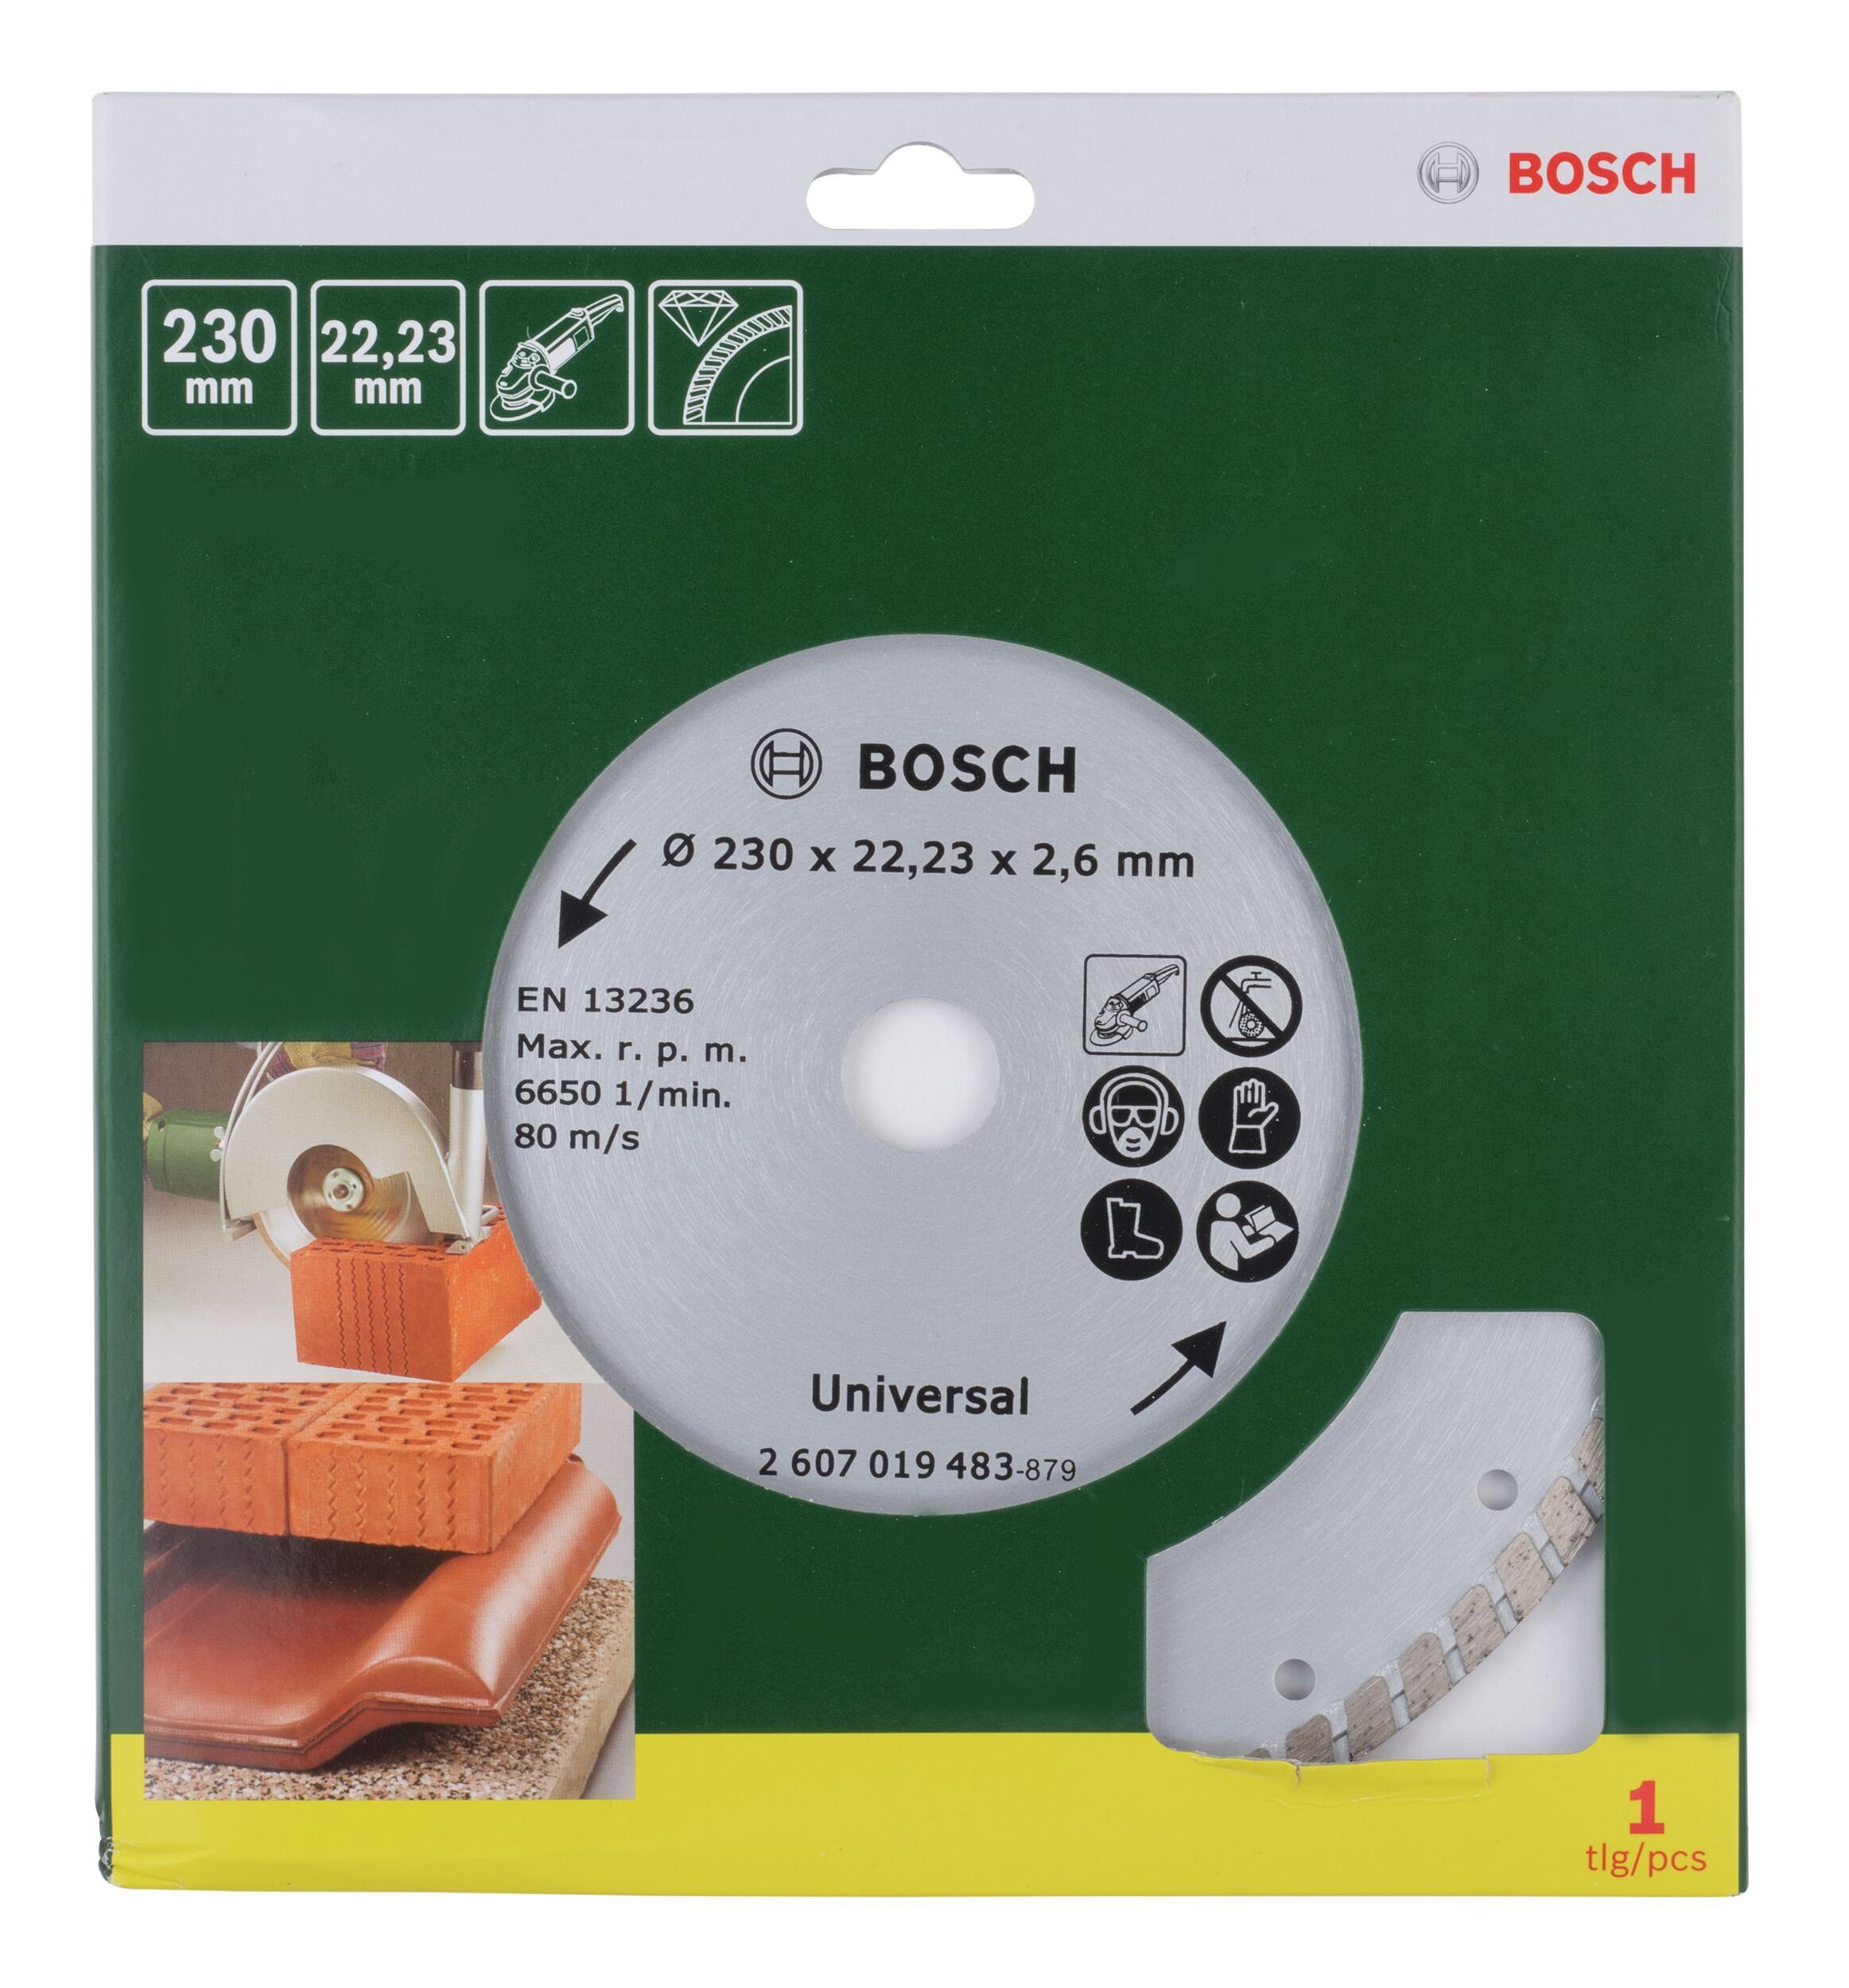 Accessories Trennscheibe, - Bosch mm BOSCH Turbo Diamanttrennscheibe 230